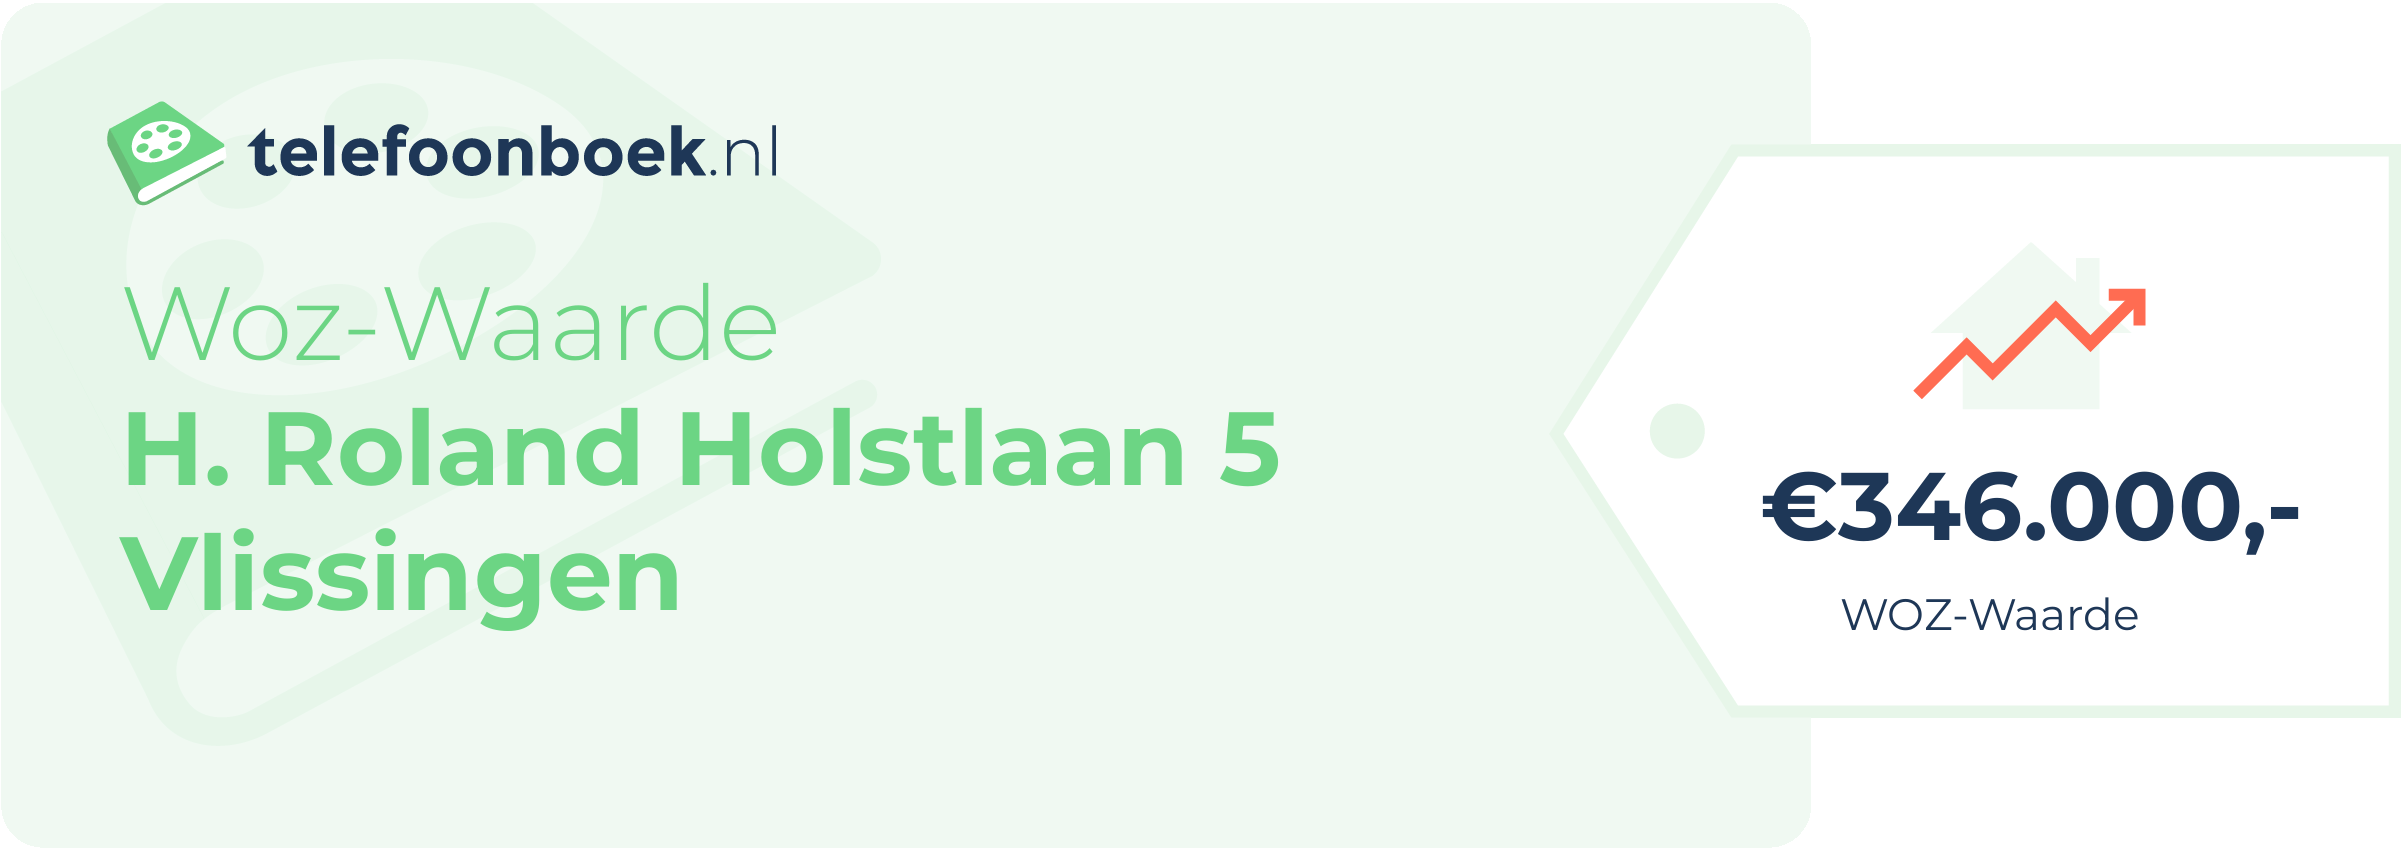 WOZ-waarde H. Roland Holstlaan 5 Vlissingen